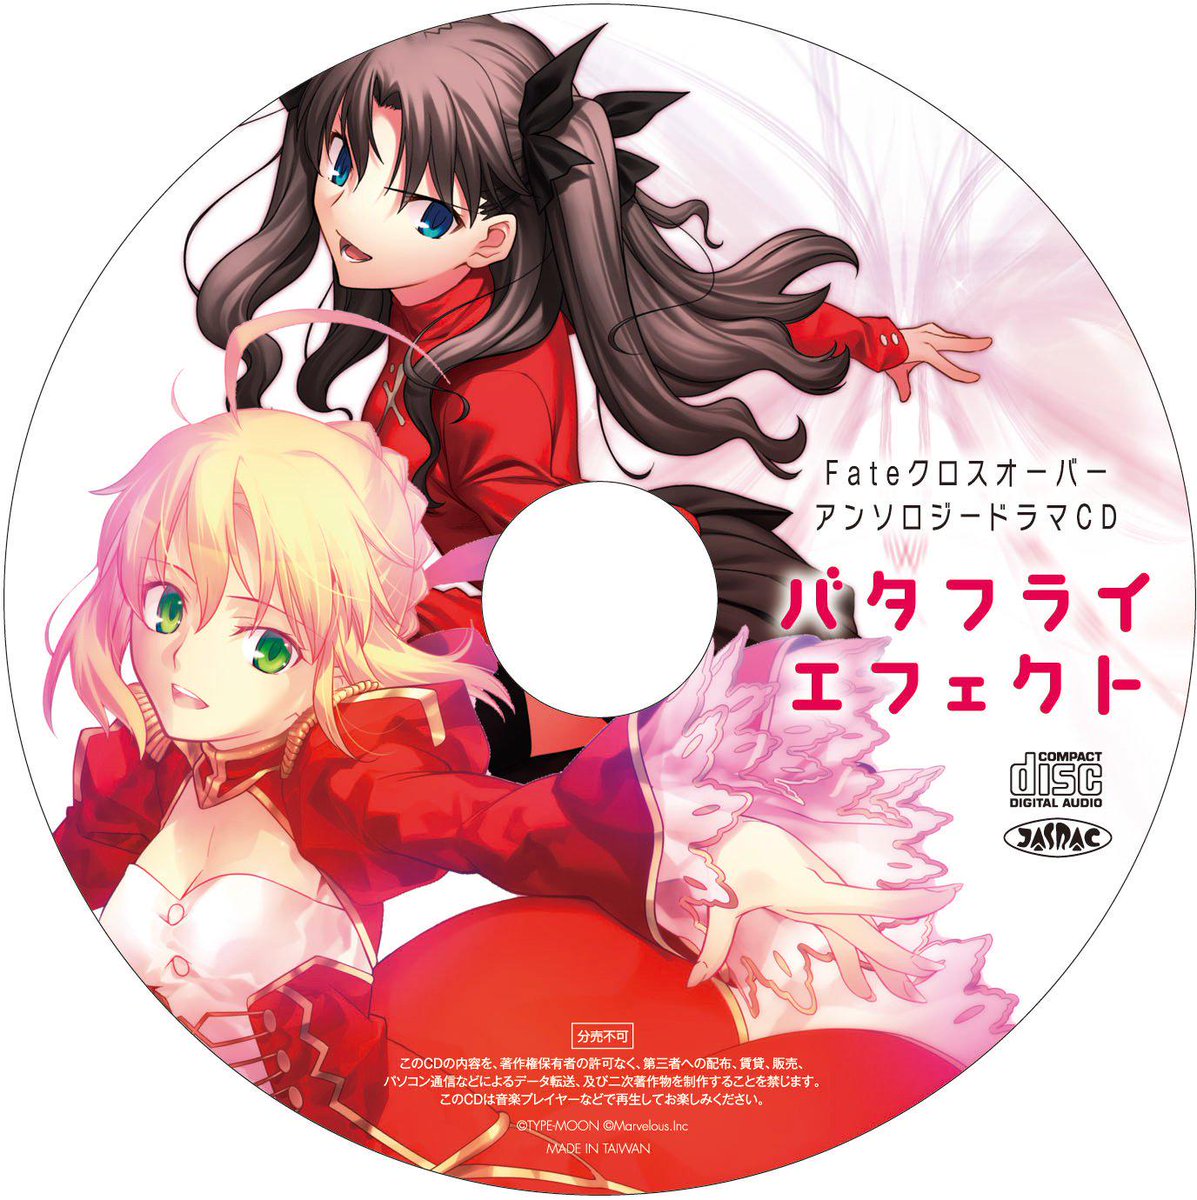 Fate Crossover Drama CD: Butterfly Effect | TYPE-MOON Wiki | Fandom